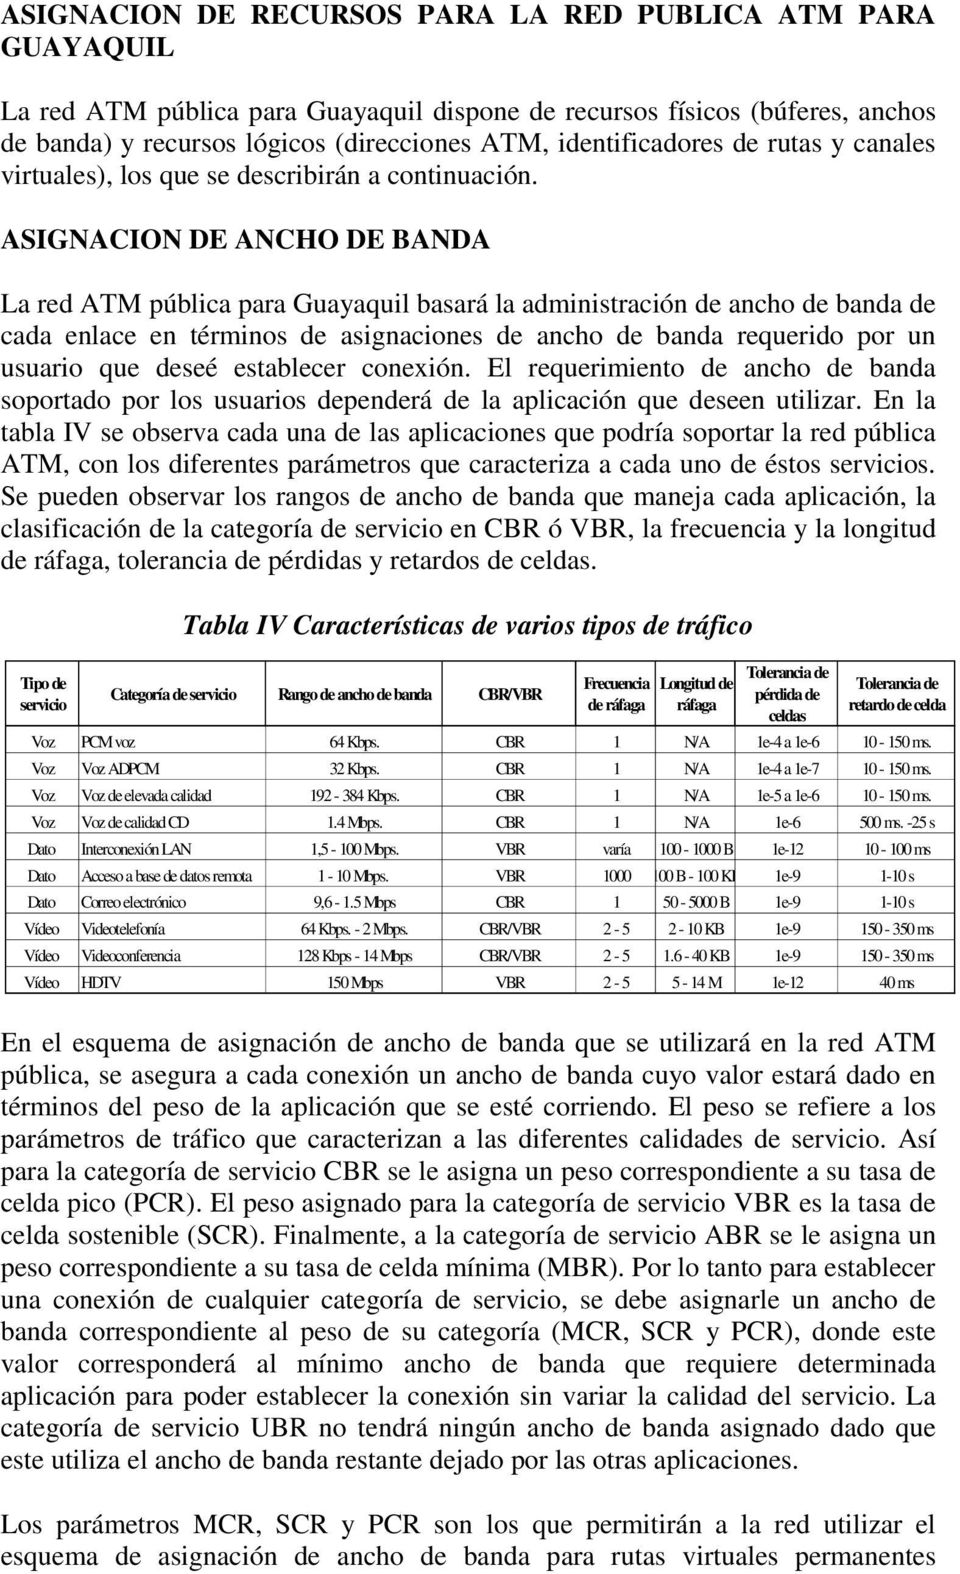 ASIGNACION DE ANCHO DE BANDA La red ATM pública para Guayaquil basará la administración de ancho de banda de cada enlace en términos de asignaciones de ancho de banda requerido por un usuario que